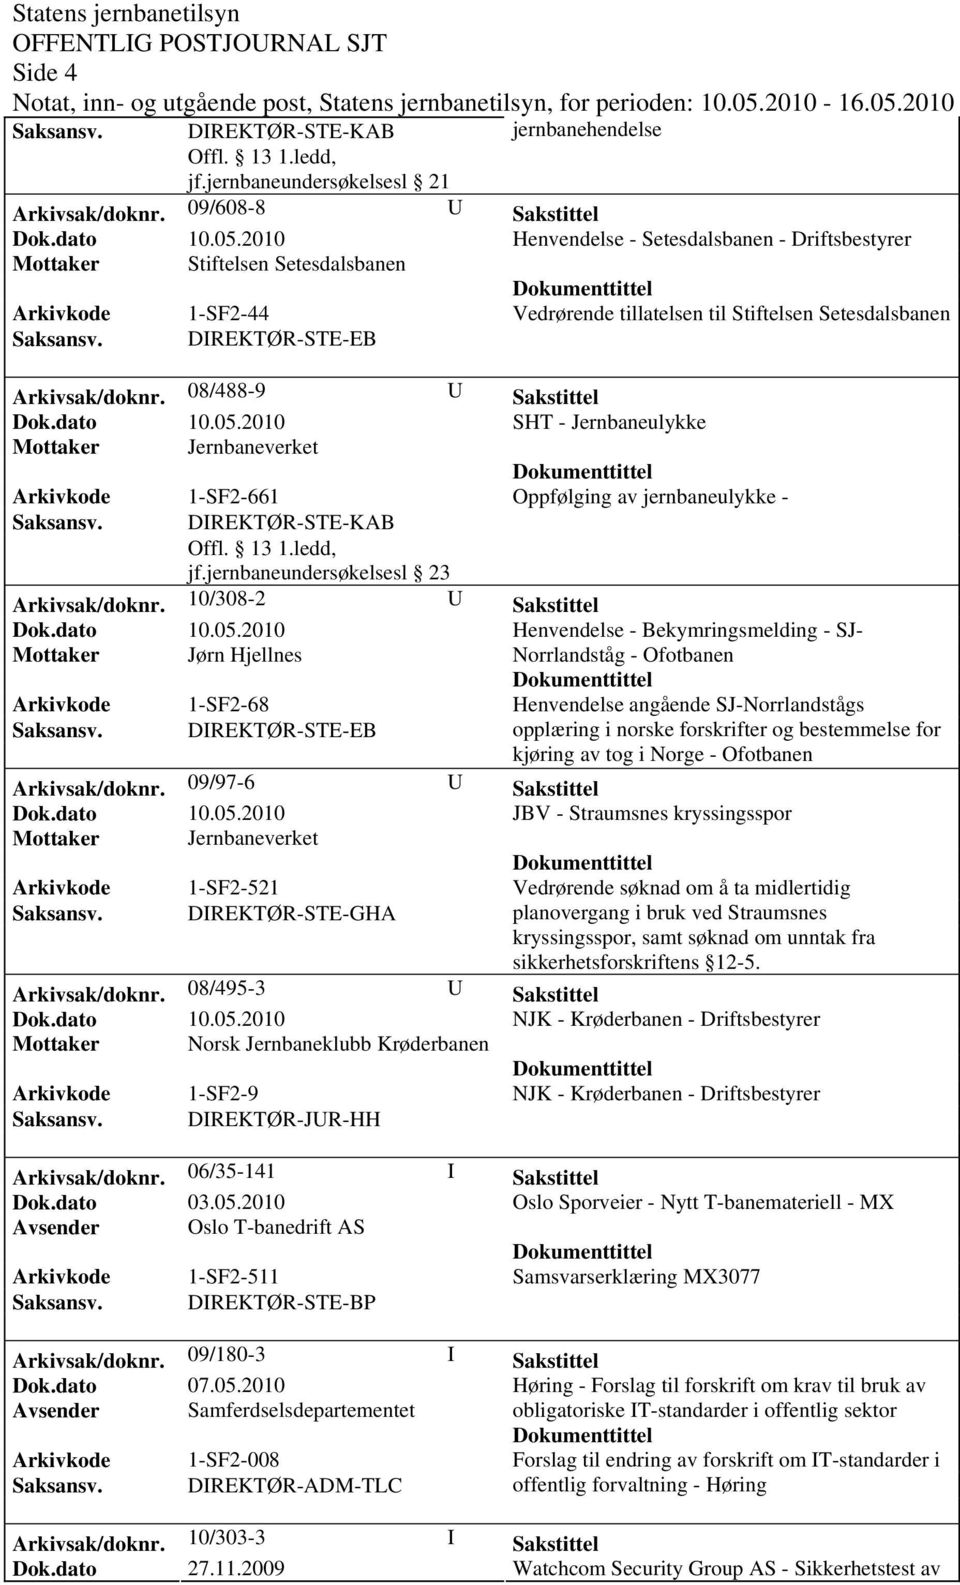 DIREKTØR-STE-EB Arkivsak/doknr. 08/488-9 U Sakstittel SHT - Jernbaneulykke Arkivkode 1-SF2-661 Oppfølging av jernbaneulykke - Offl. 13 1.ledd, jf.